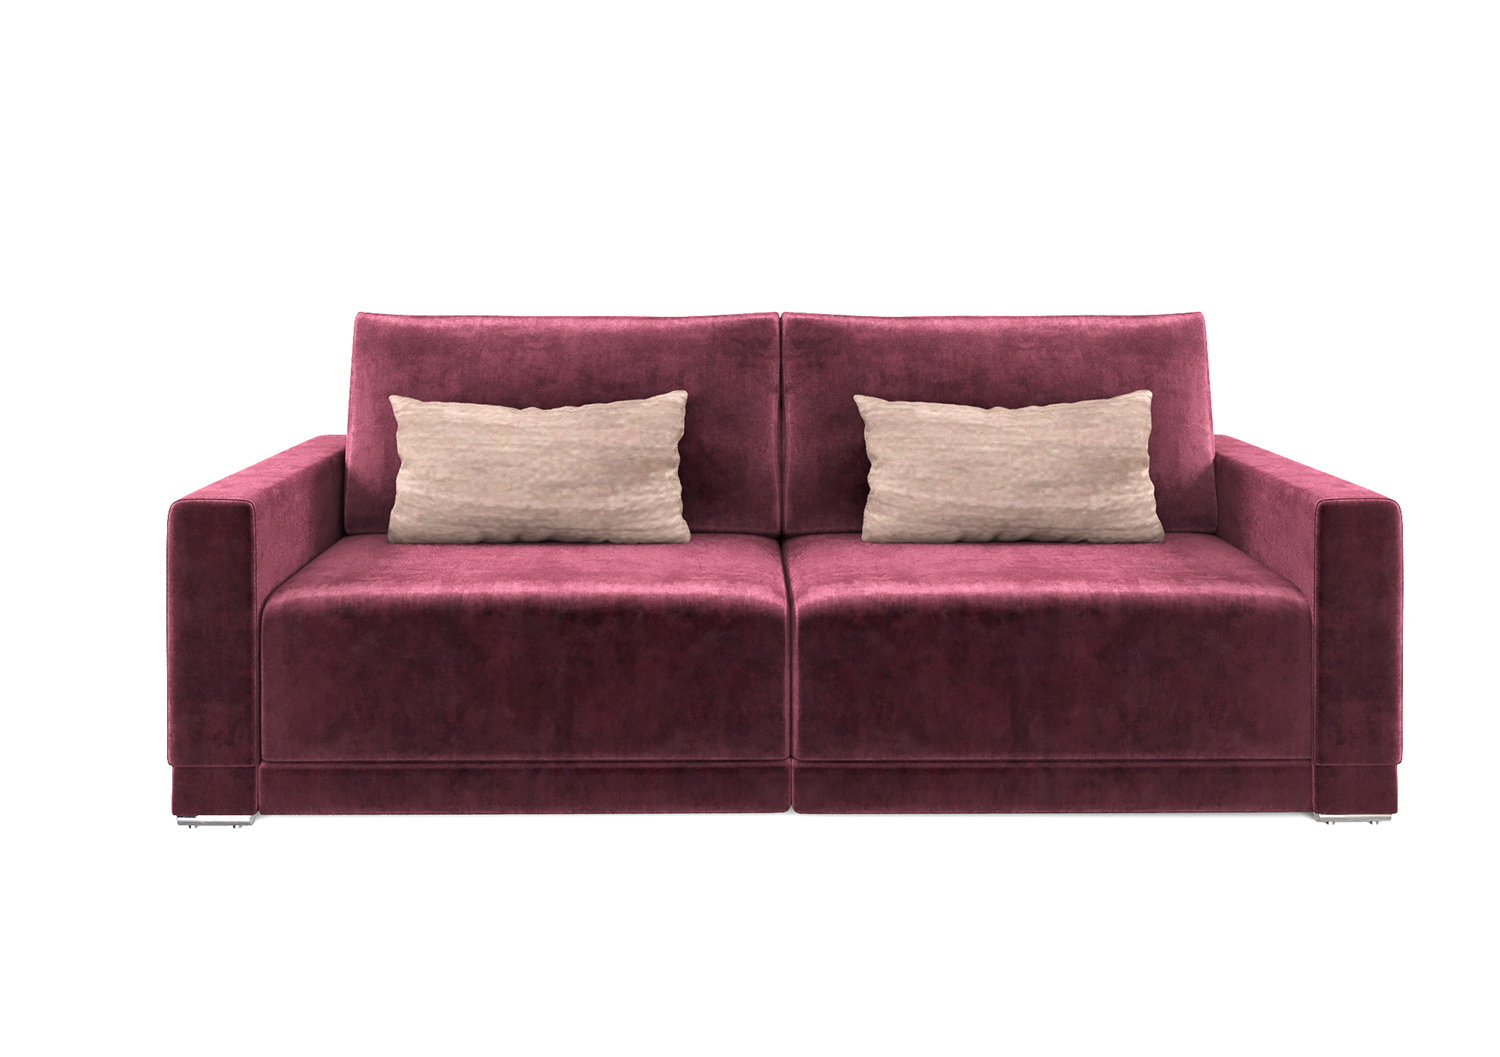 Мартин, прямой диван, Marseille burgundy ткань Шенилл цвет Бордовый механизм трансформации Еврокнижка изображение 2